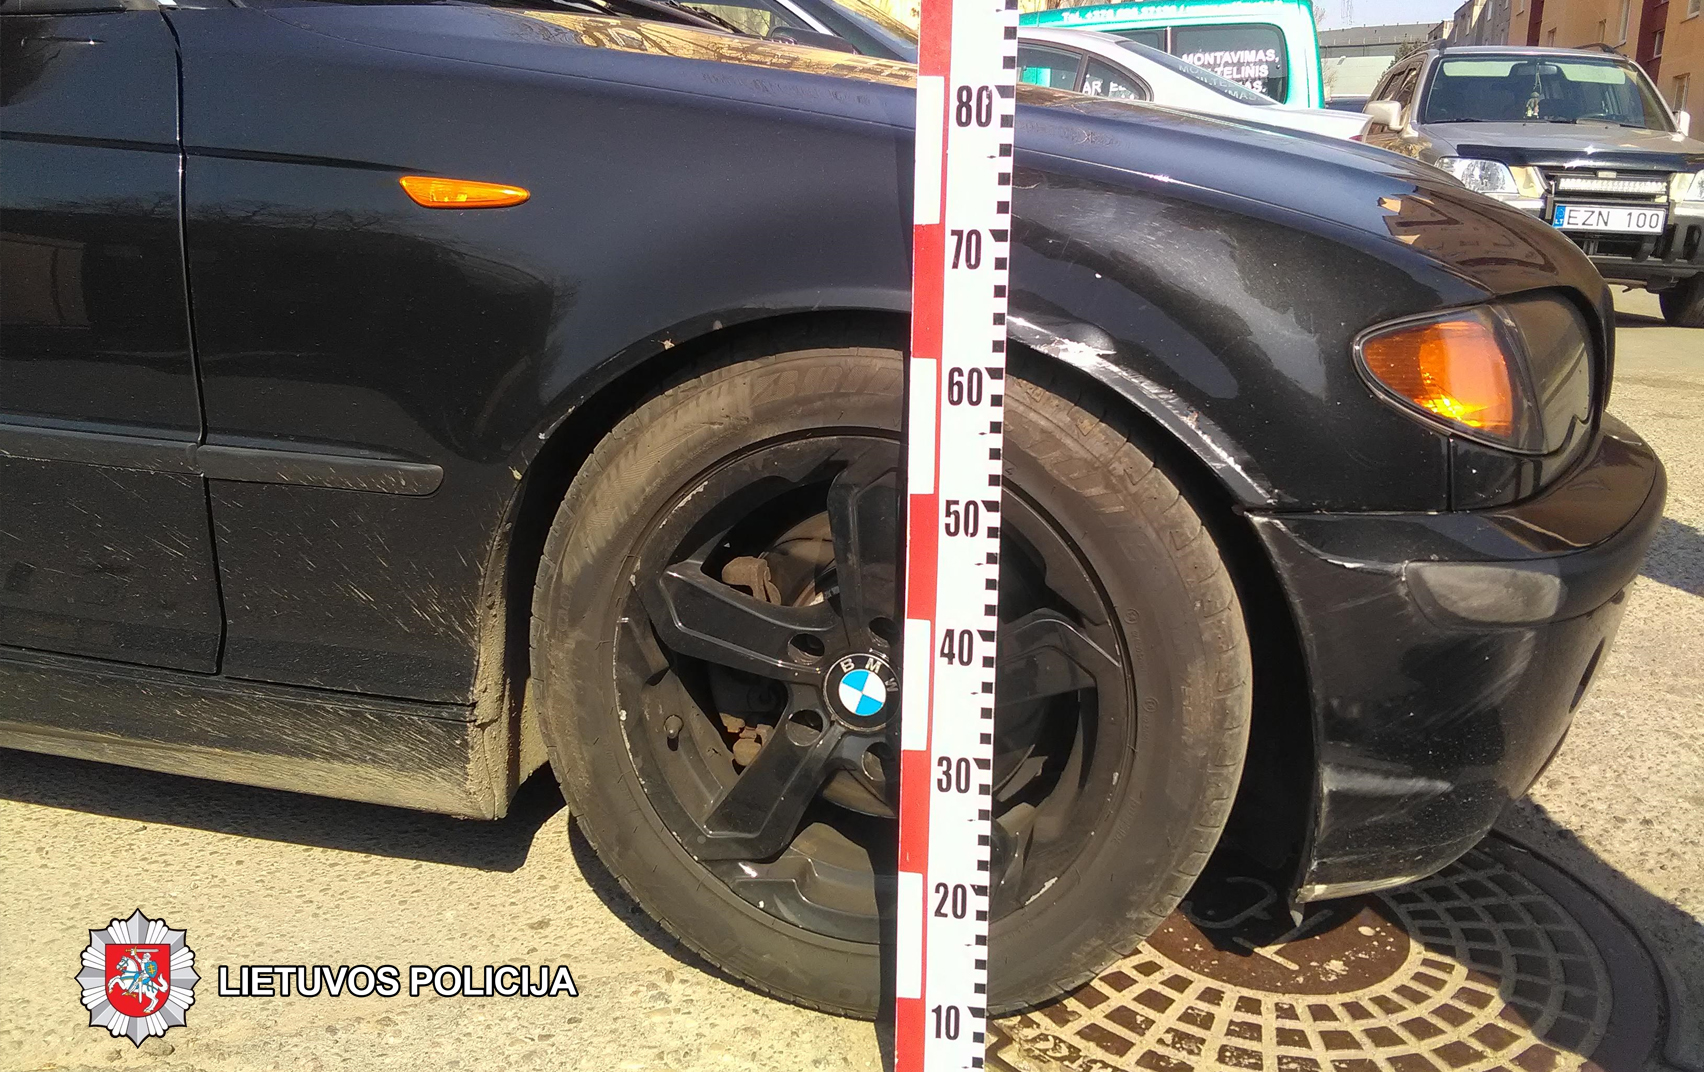 2018-04-14 Panevėžyje, Kosmonautų g., apgadintas stovėjęs automobilis BMW. Jį apgadinęs kito automobilio vairuotojas iš eismo įvykio vietos pasitraukė.